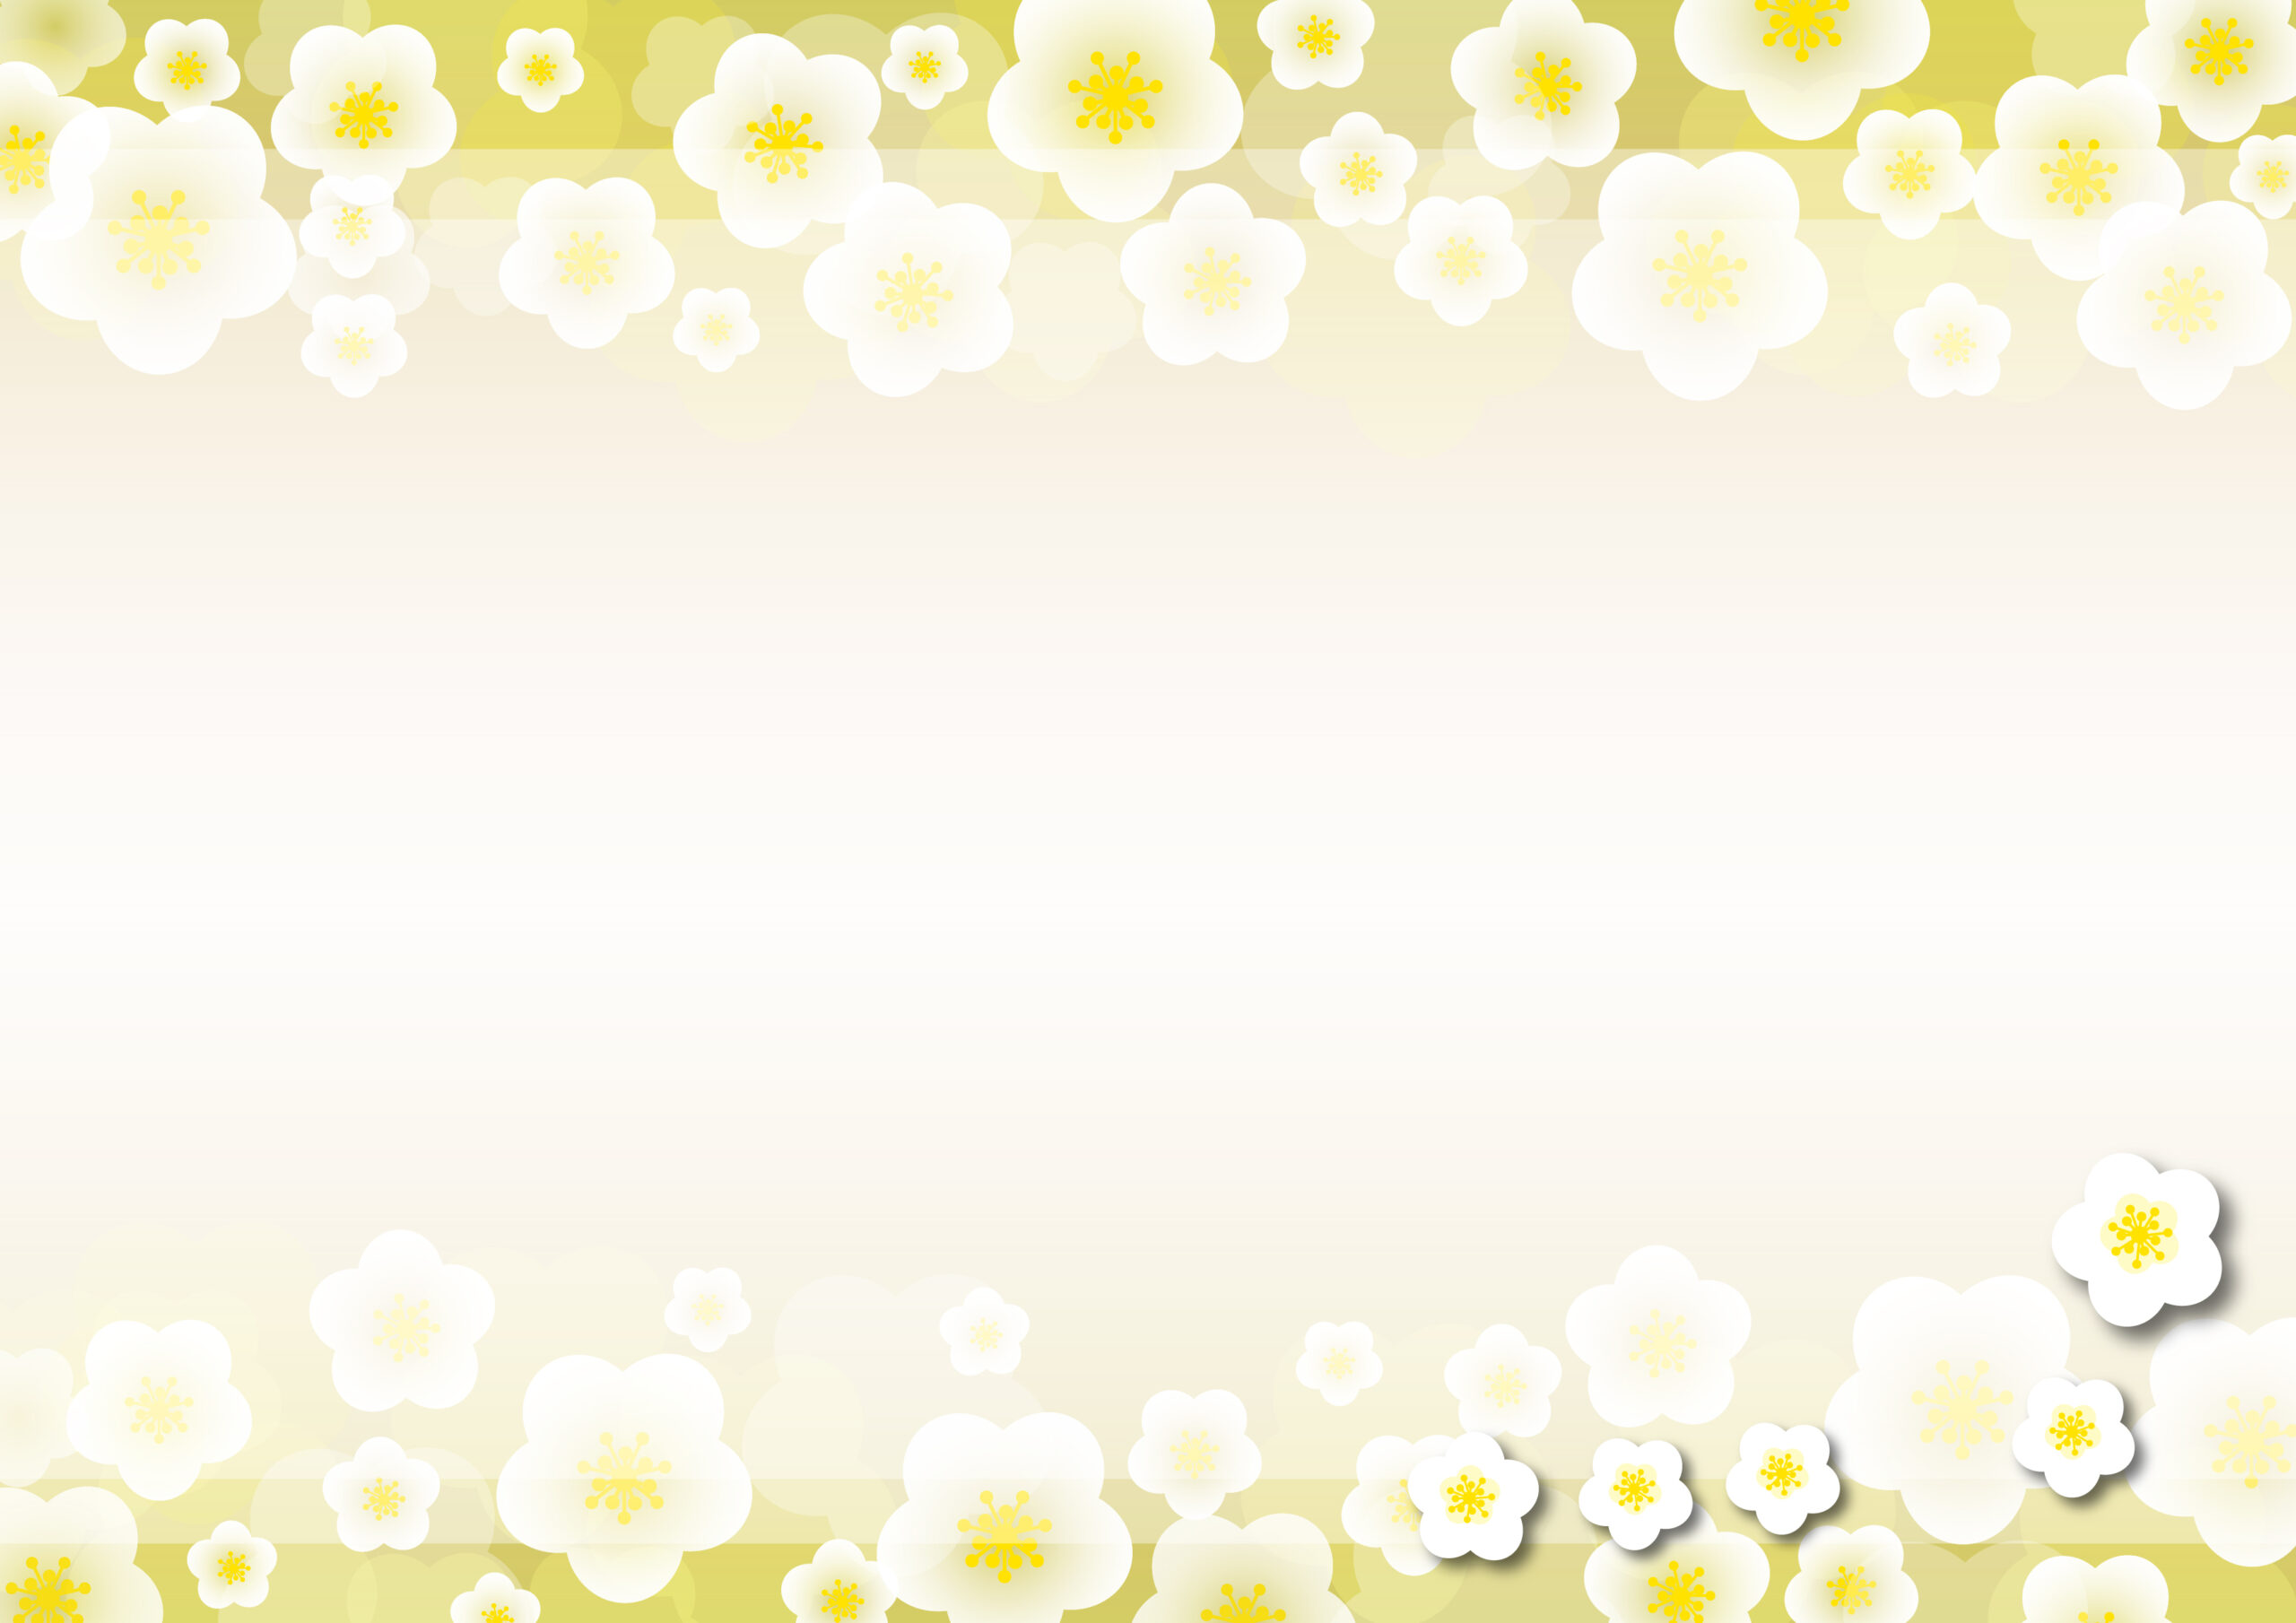 高齢者施設や介護施設のイベントのお知らせポスターや張り紙の飾り枠におすすめ！春に近づく季節を感じる梅の花のイラストデザインで、明るい雰囲気のあるおしゃれなフレーム素材になります。ダウンロードしてご使用ください。ダウンロード：JPG